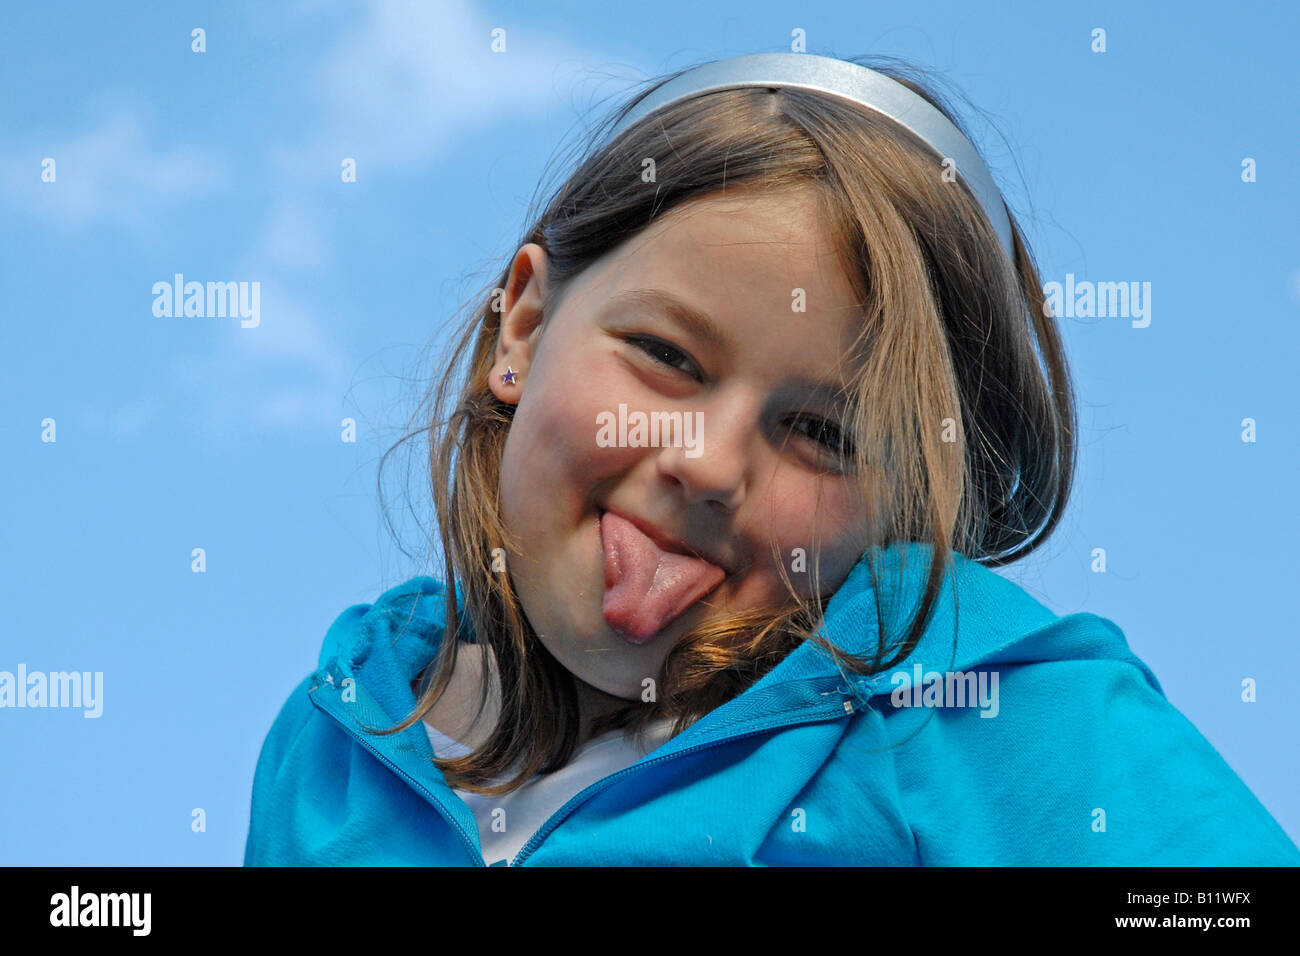 Junge Mädchen Zunge Heraus Stockfotografie Alamy 